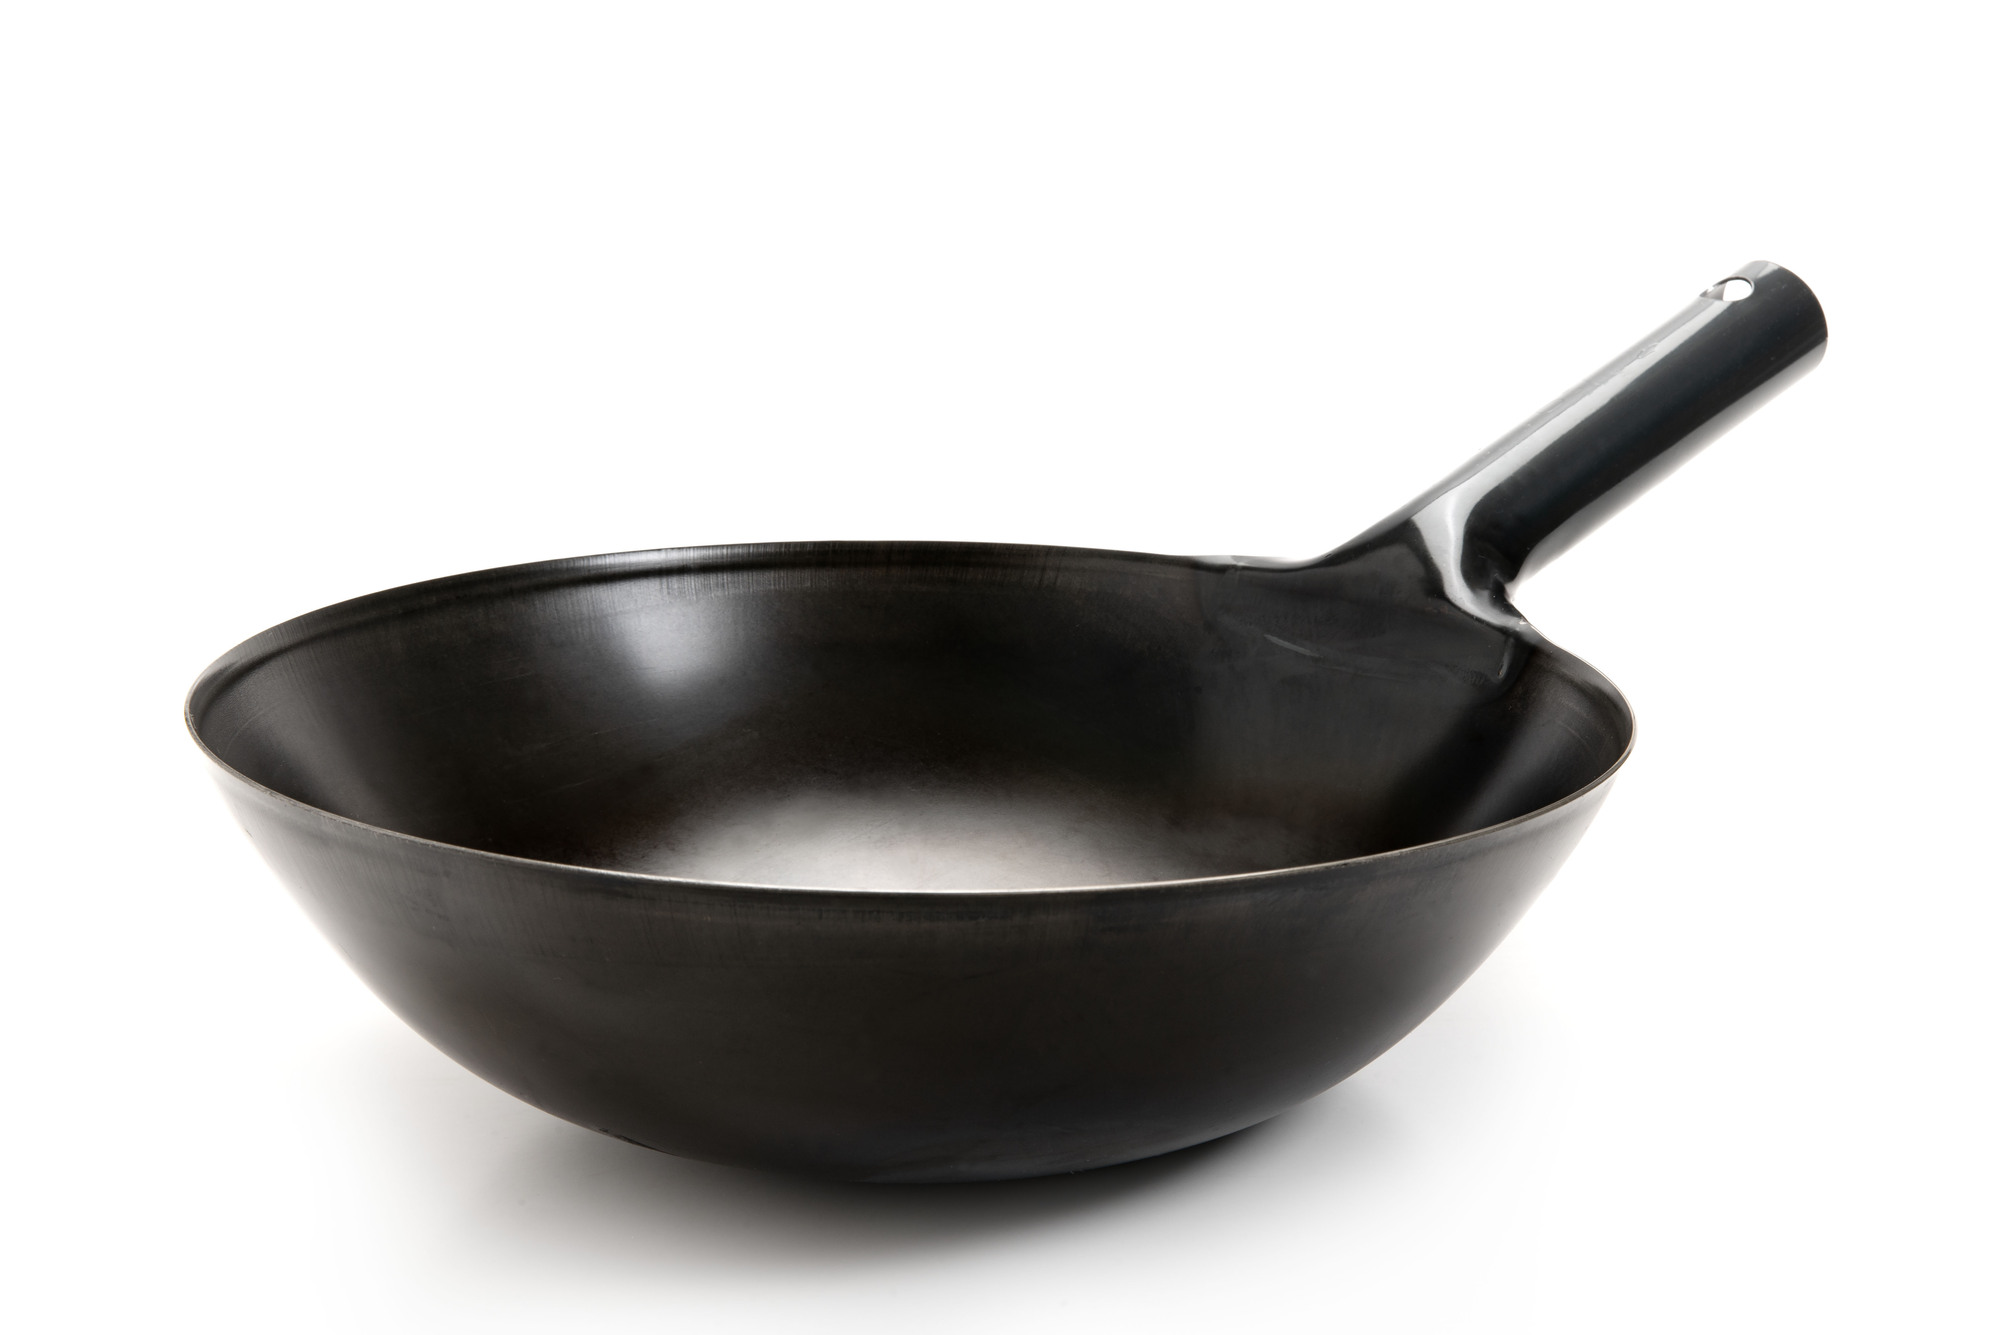 調理の際に鉄製の鍋、やかんなどの器具を活用して鉄分を摂りましょう